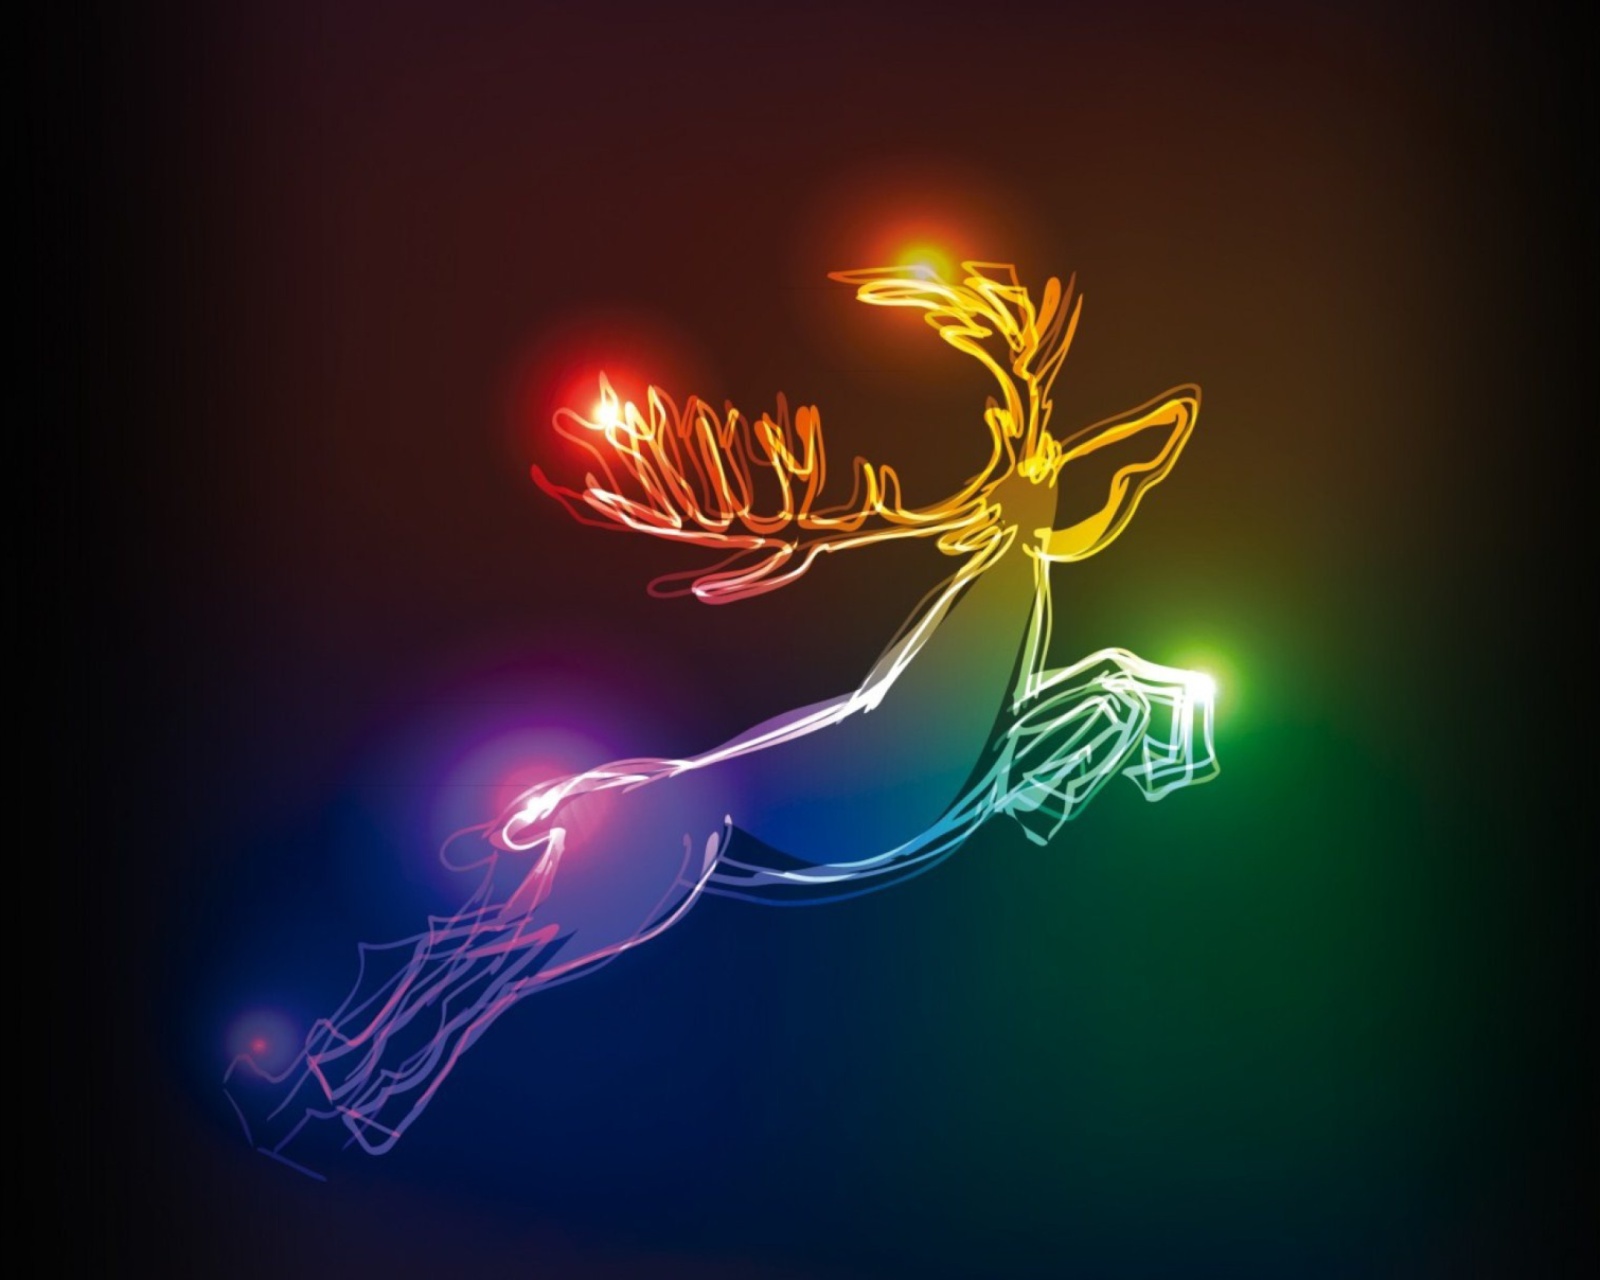 Das Lighted Christmas Deer Wallpaper 1600x1280